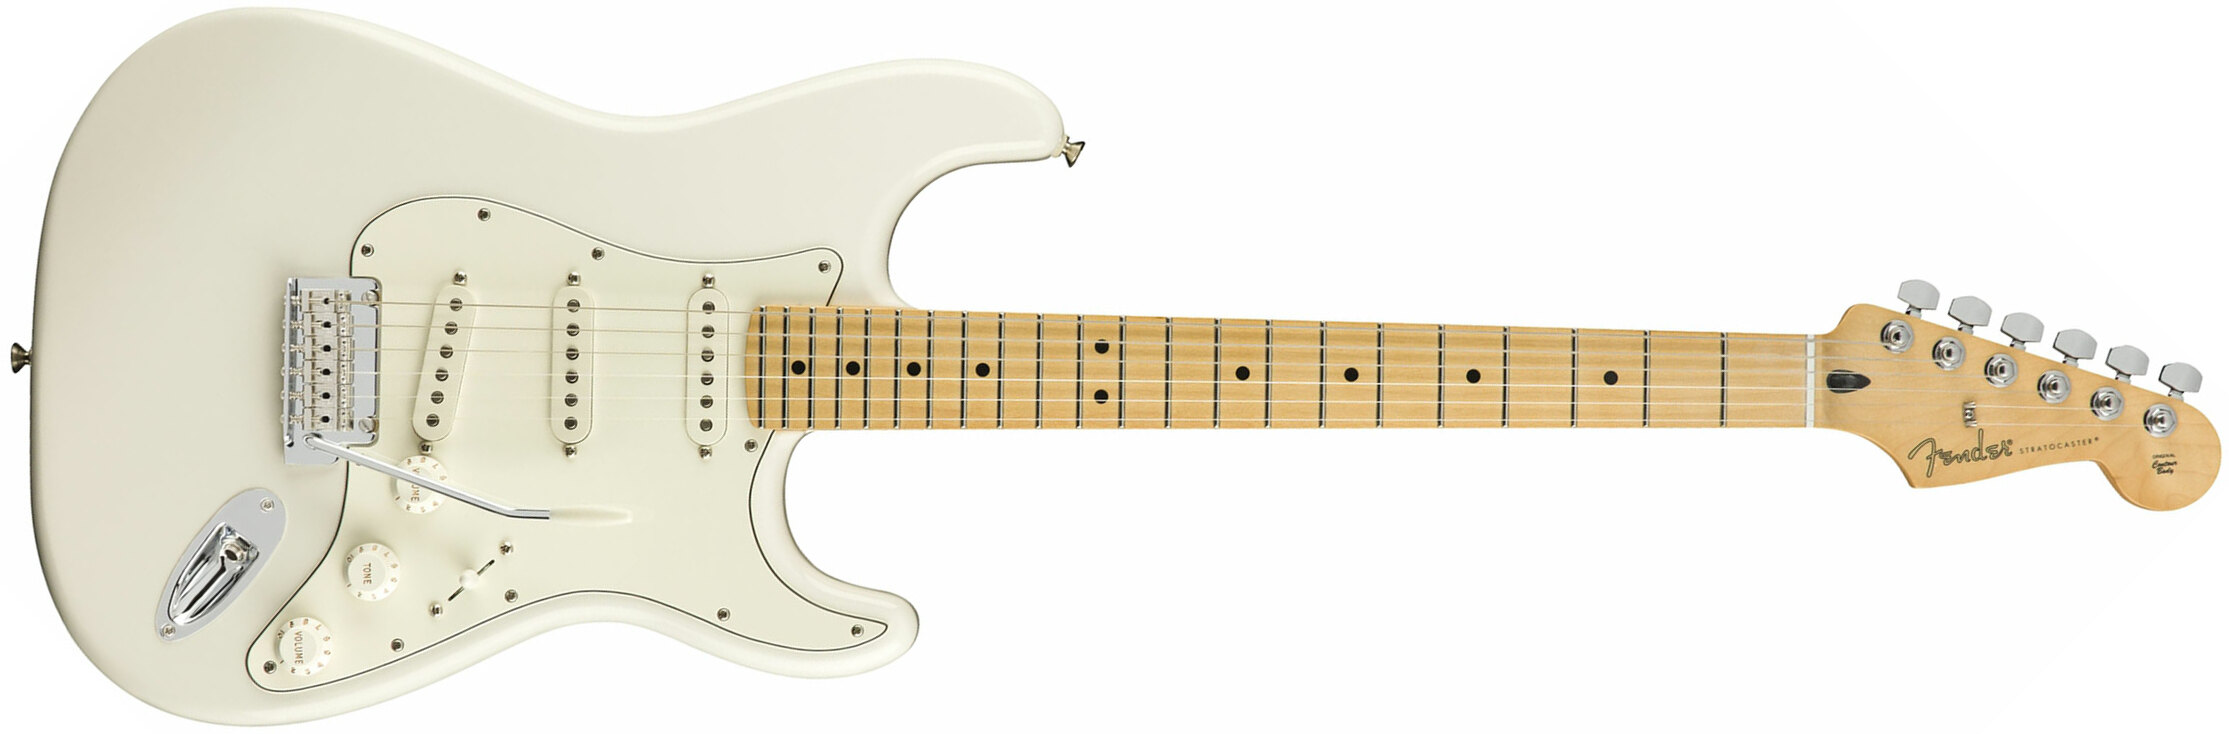 Fender Strat Player Mex Sss Mn - Polar White - E-Gitarre in Str-Form - Main picture